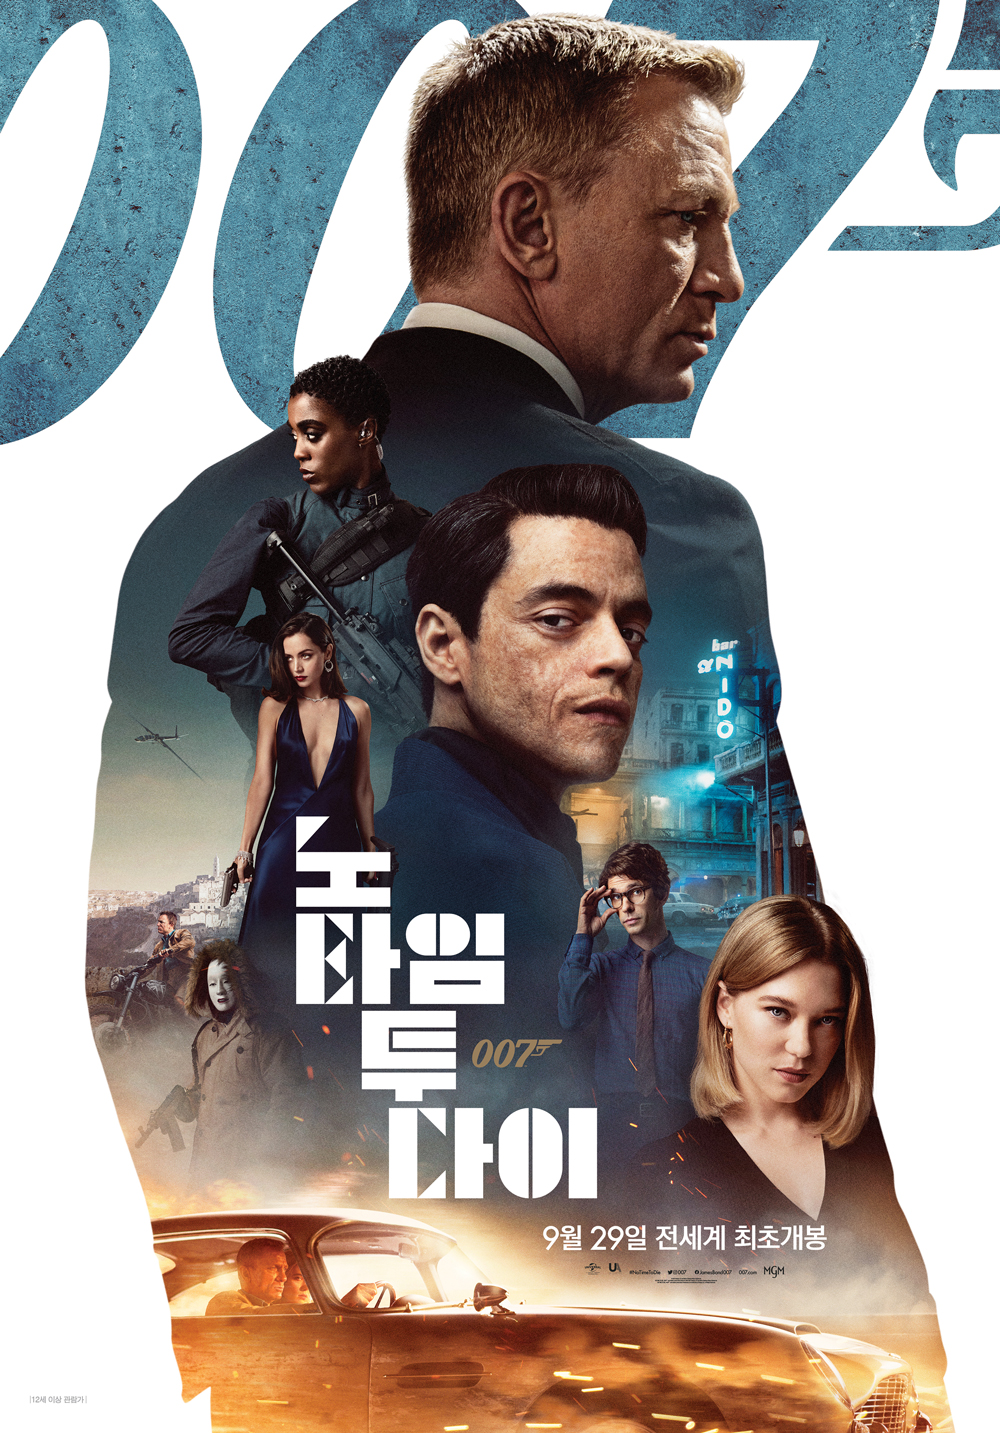 '007 노 타임 투 다이' 개봉 1주 전부터 예매율 압도적 1위